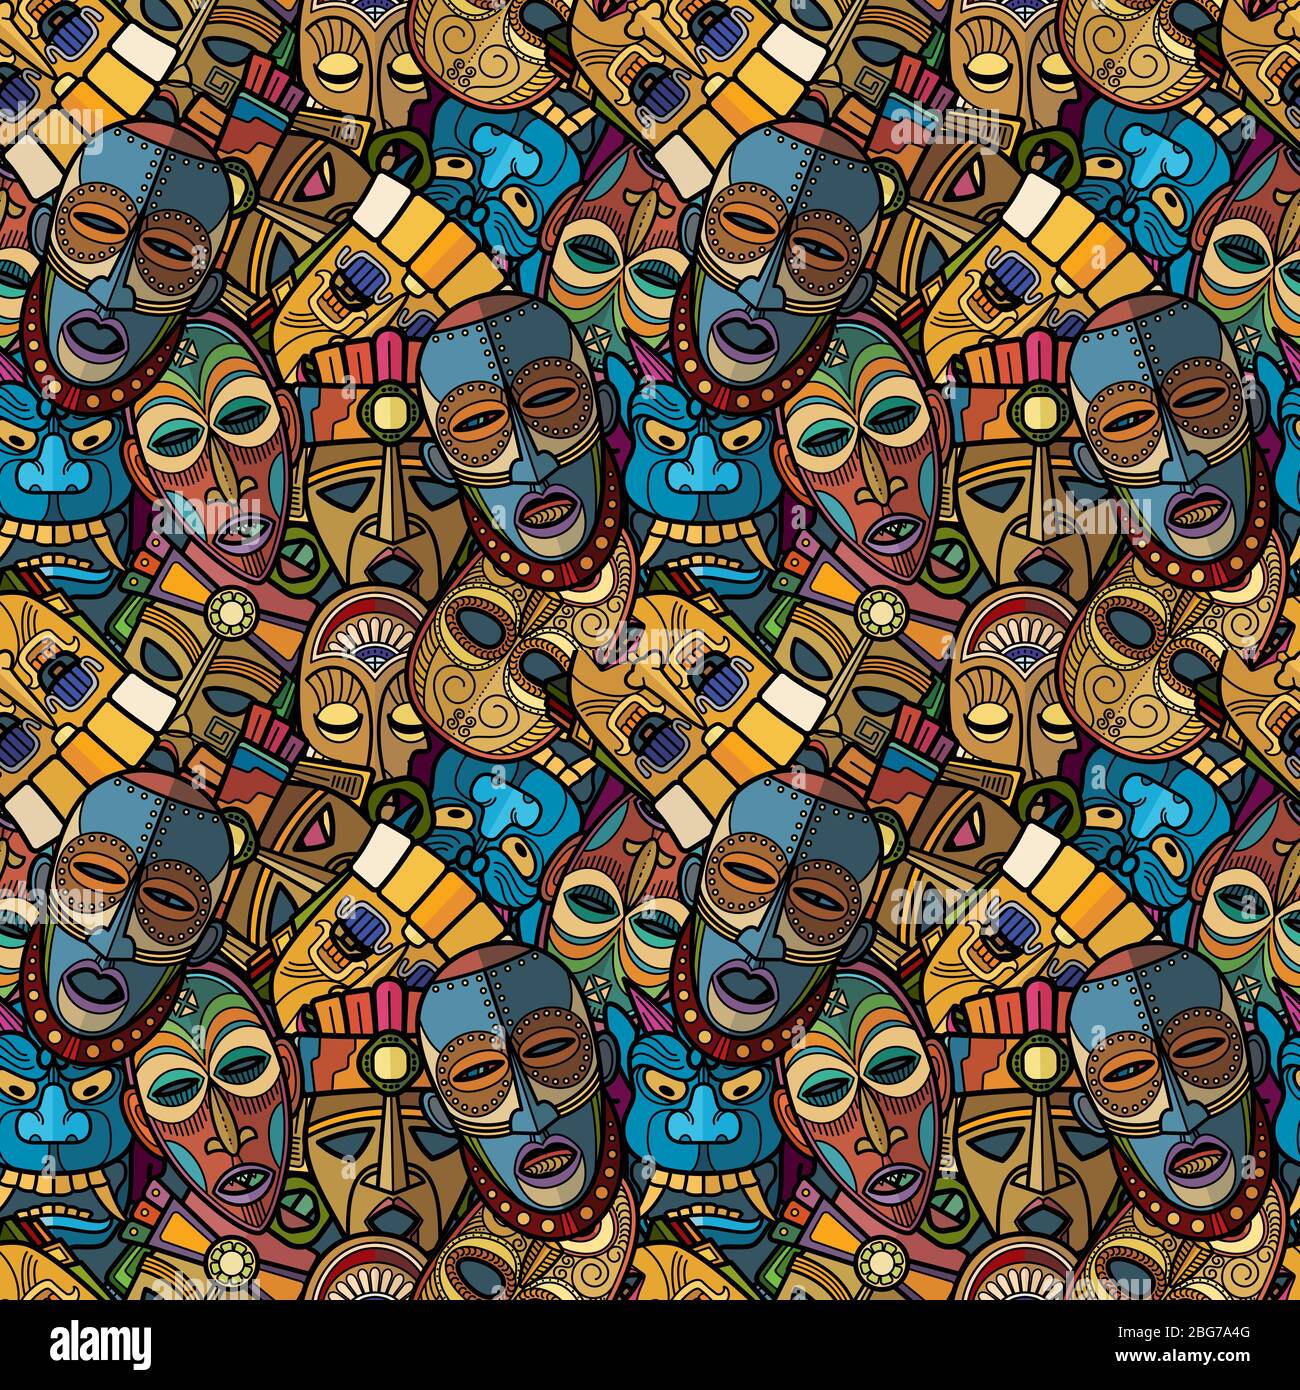 Afrikanische Handwerk Voodoo Tribal Maske und inka südamerikanischen Kultur Totem Symbole nahtlose Muster. Vektorgrafik Stock Vektor